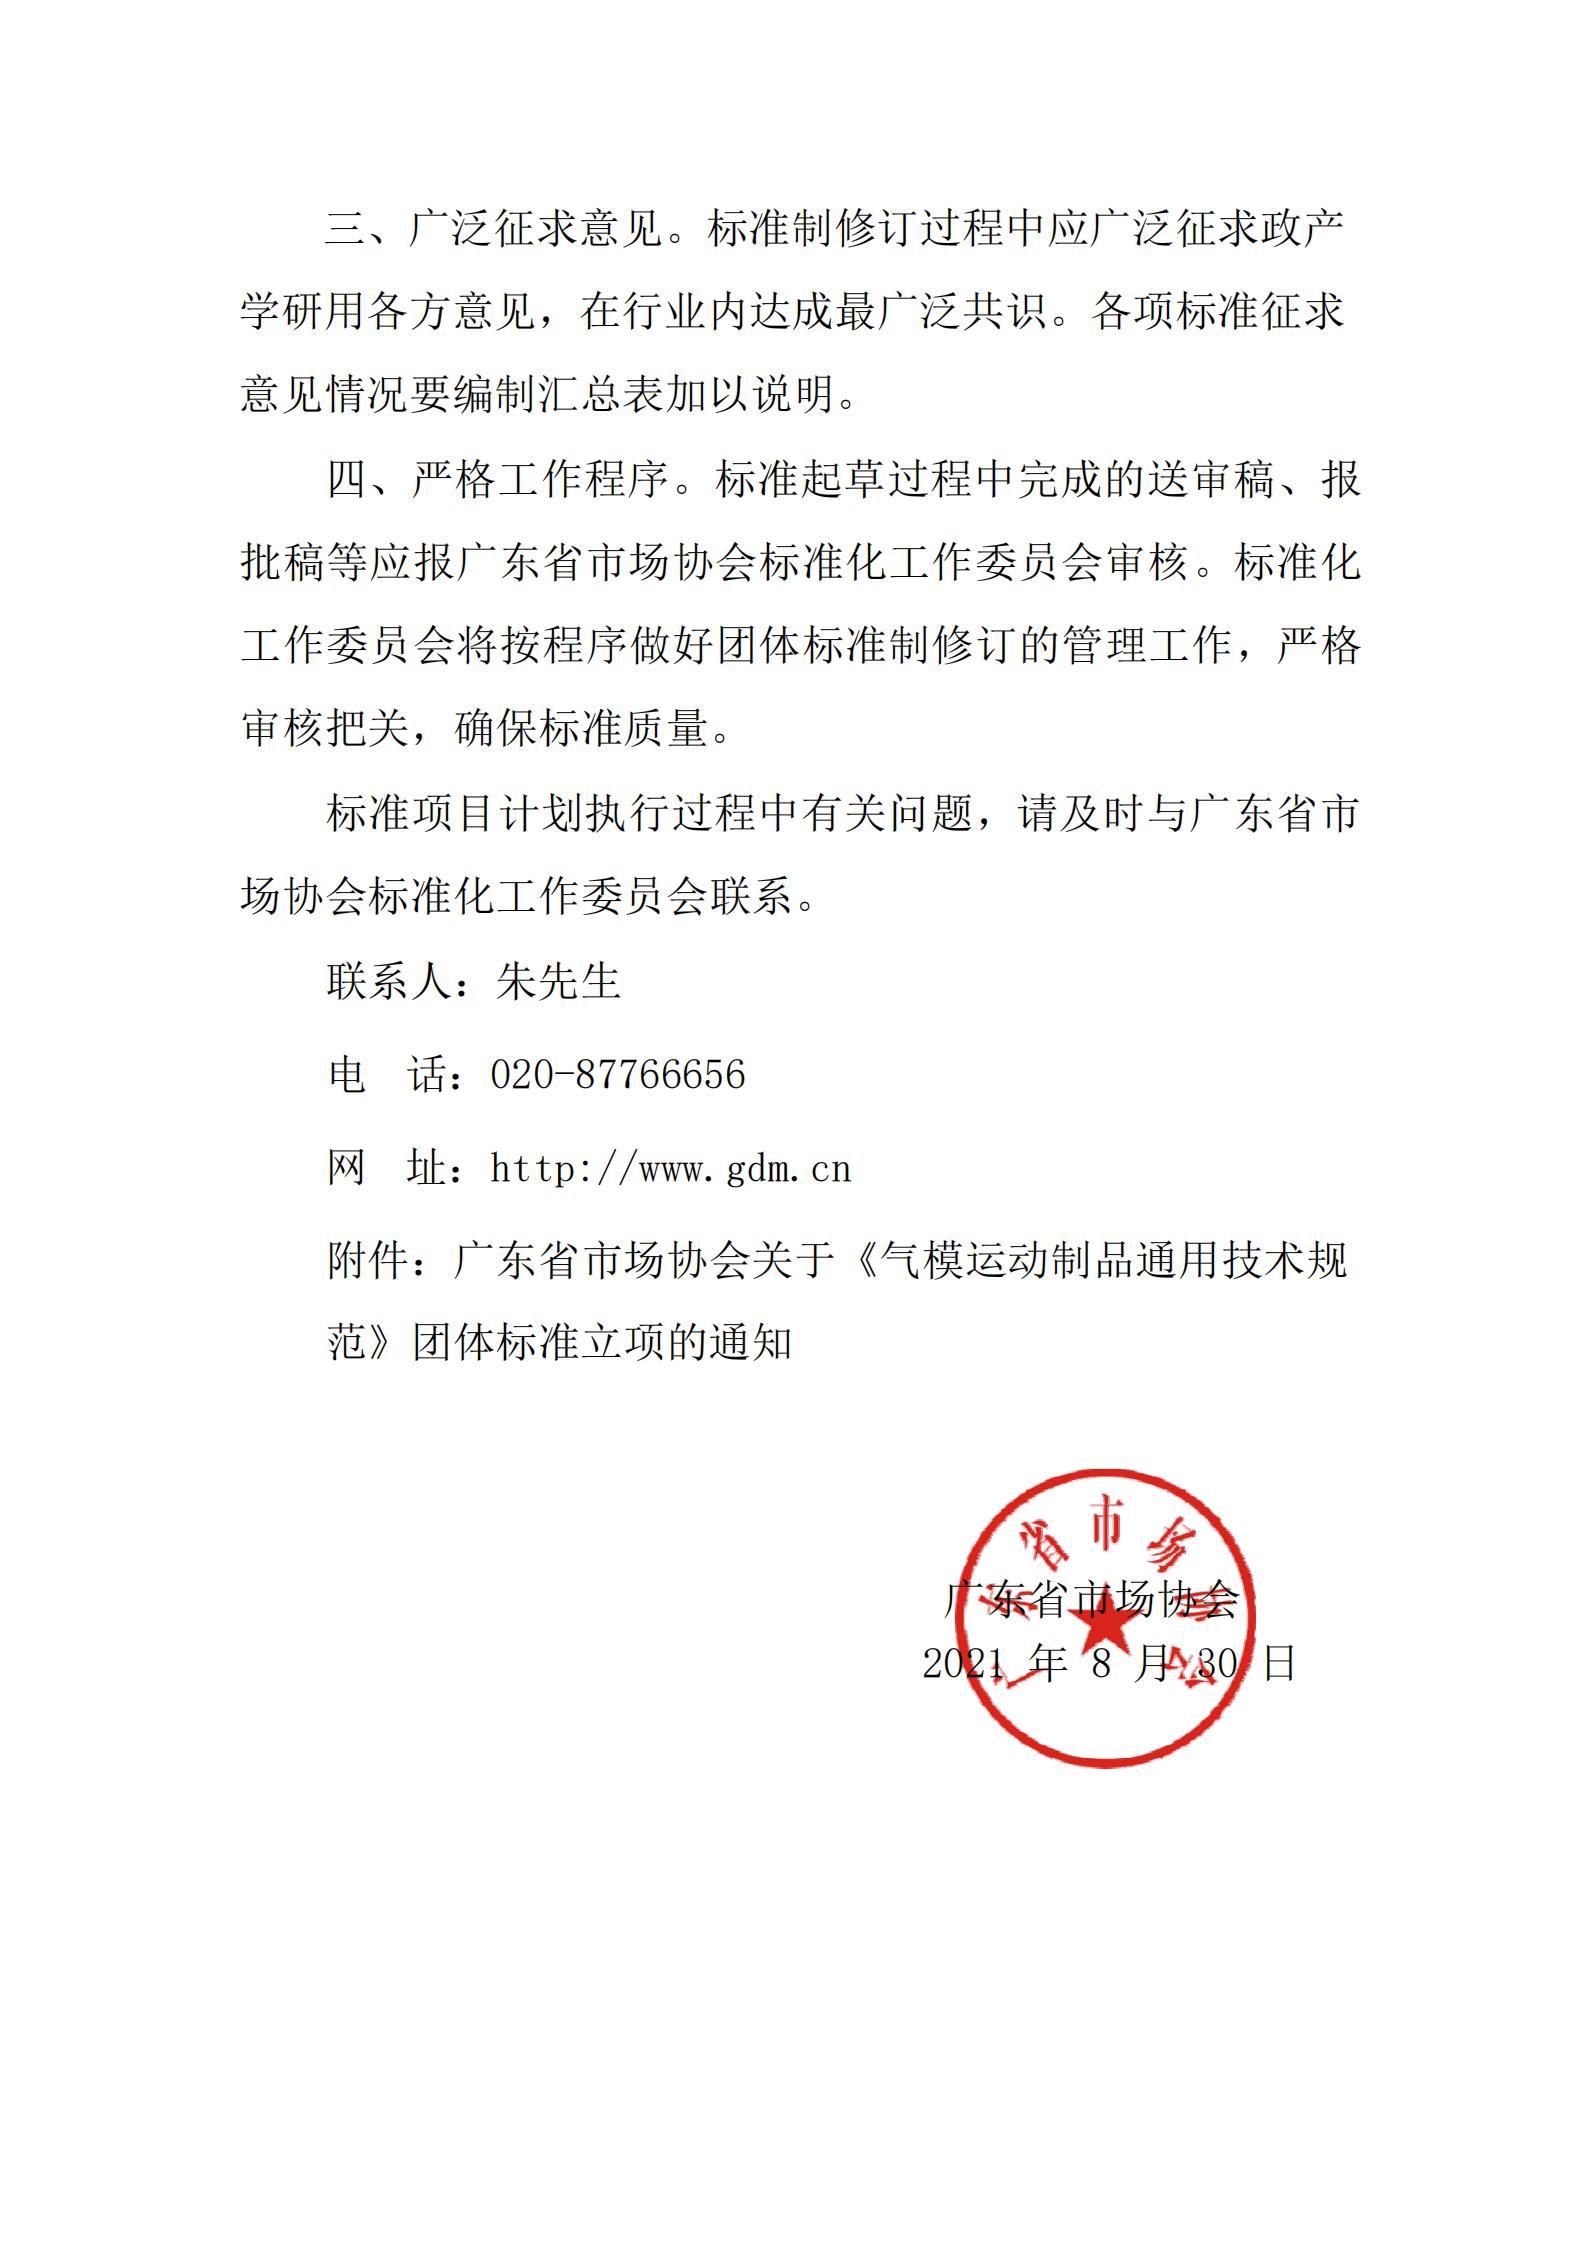 广东省市场协会关于《气模运动制品通用技术规范》团体标准立项的通知20210830 2.jpg